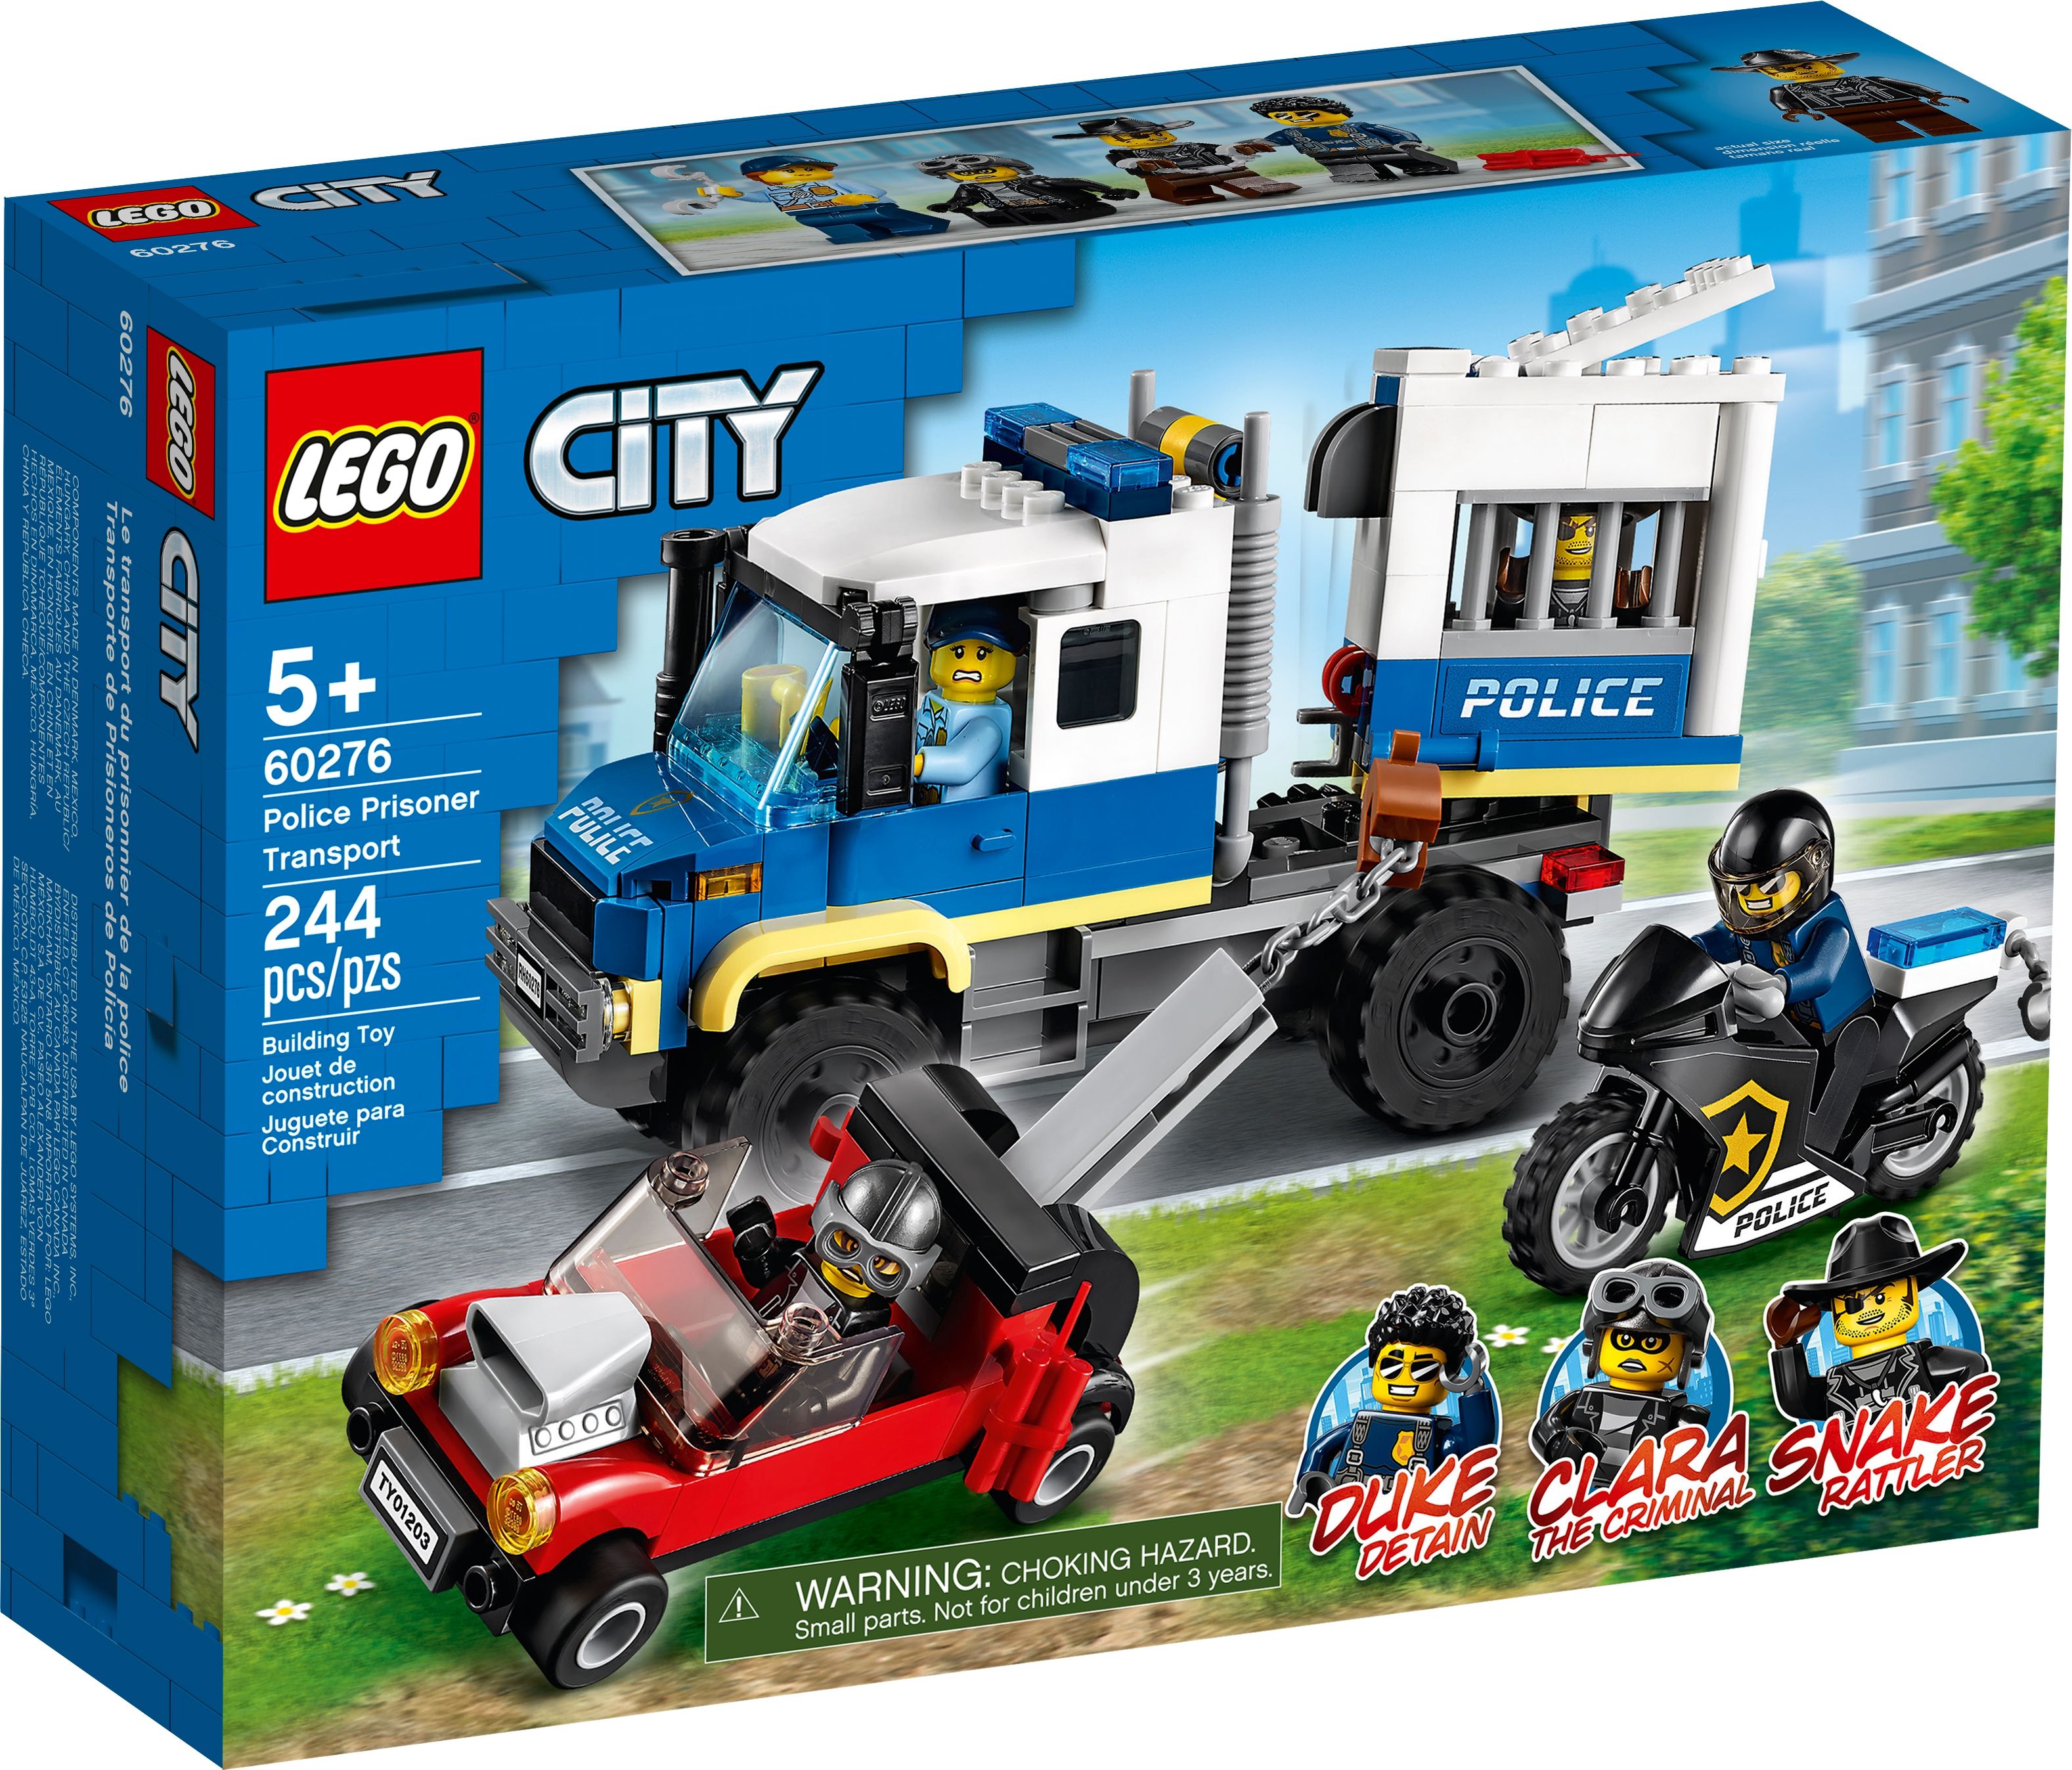 LEGO City 60276 Polizei Gefangenentransporter LEGO_60276_box1_v39.jpg